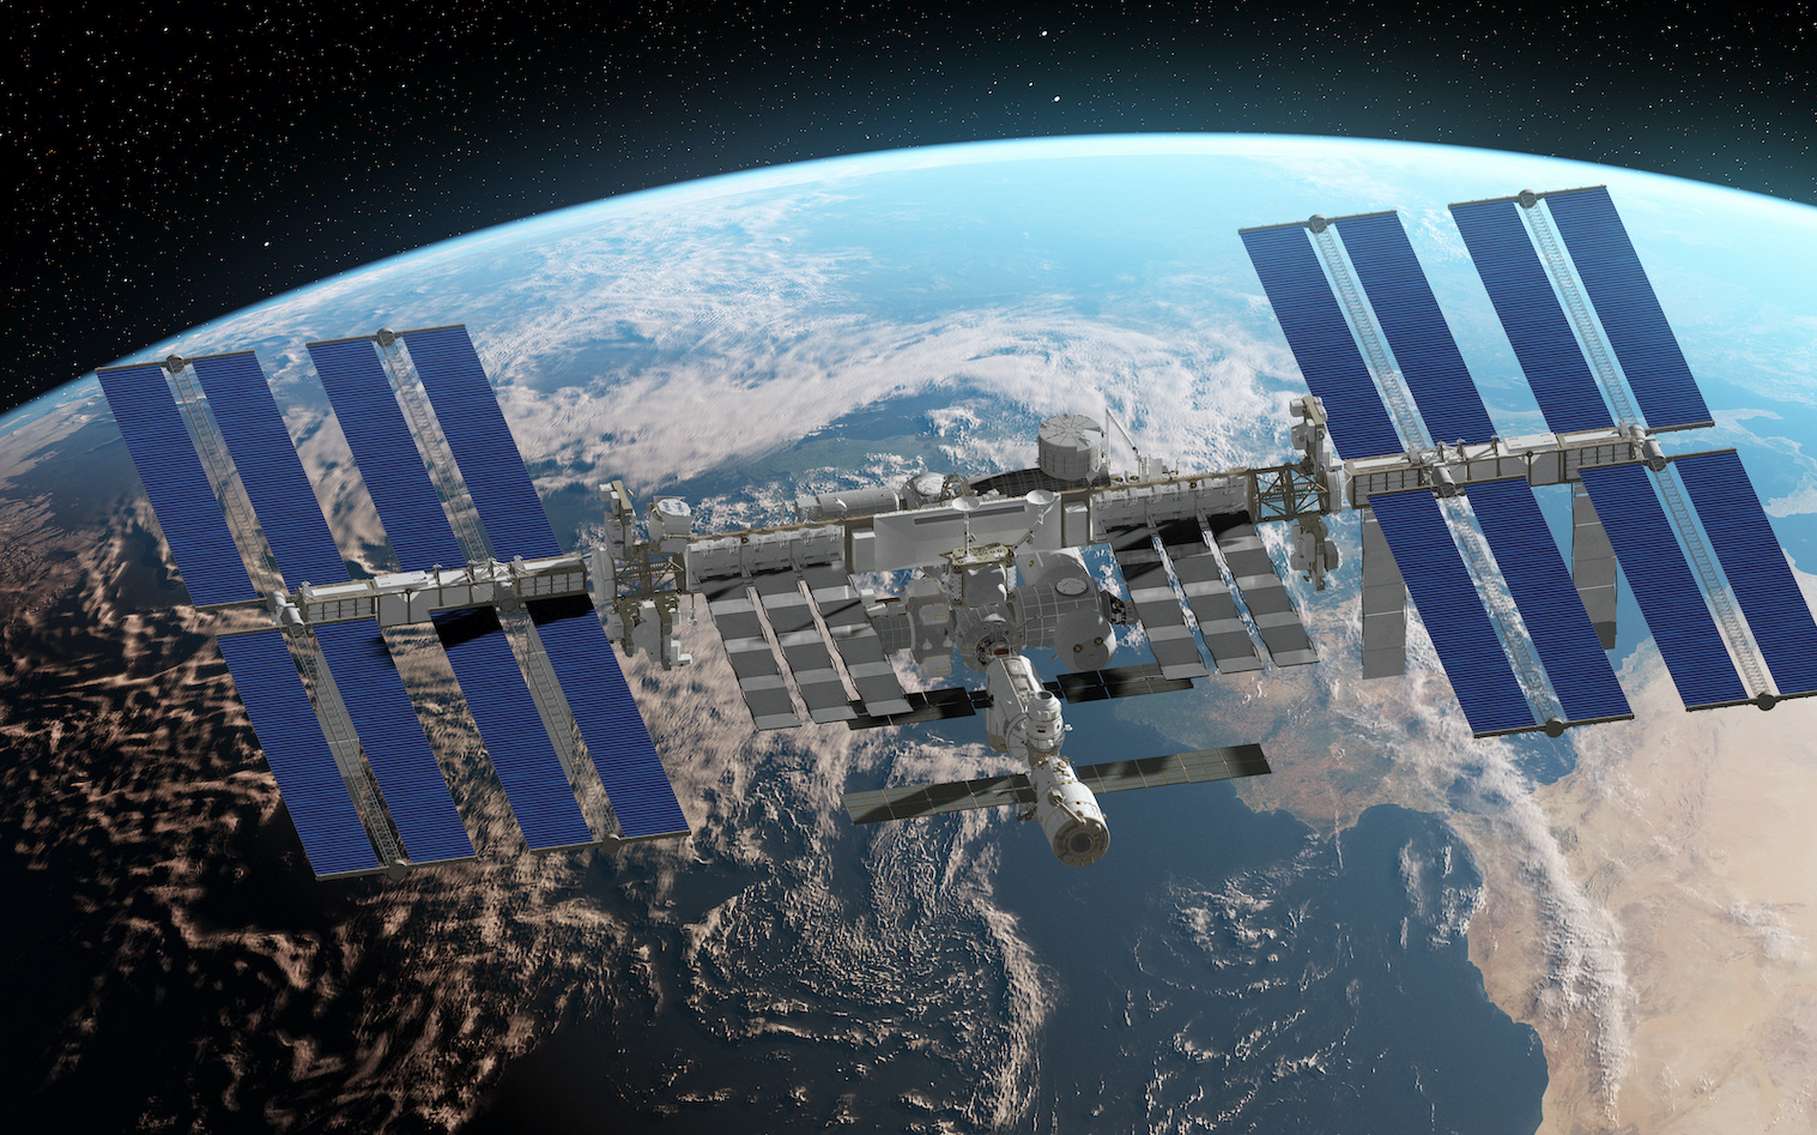 La construction de la Station spatiale internationale (ISS) a débuté en 1998. Mais l’ISS n’a accueilli son premier équipage qu’en 2000. © SciePro, Adobe Stock